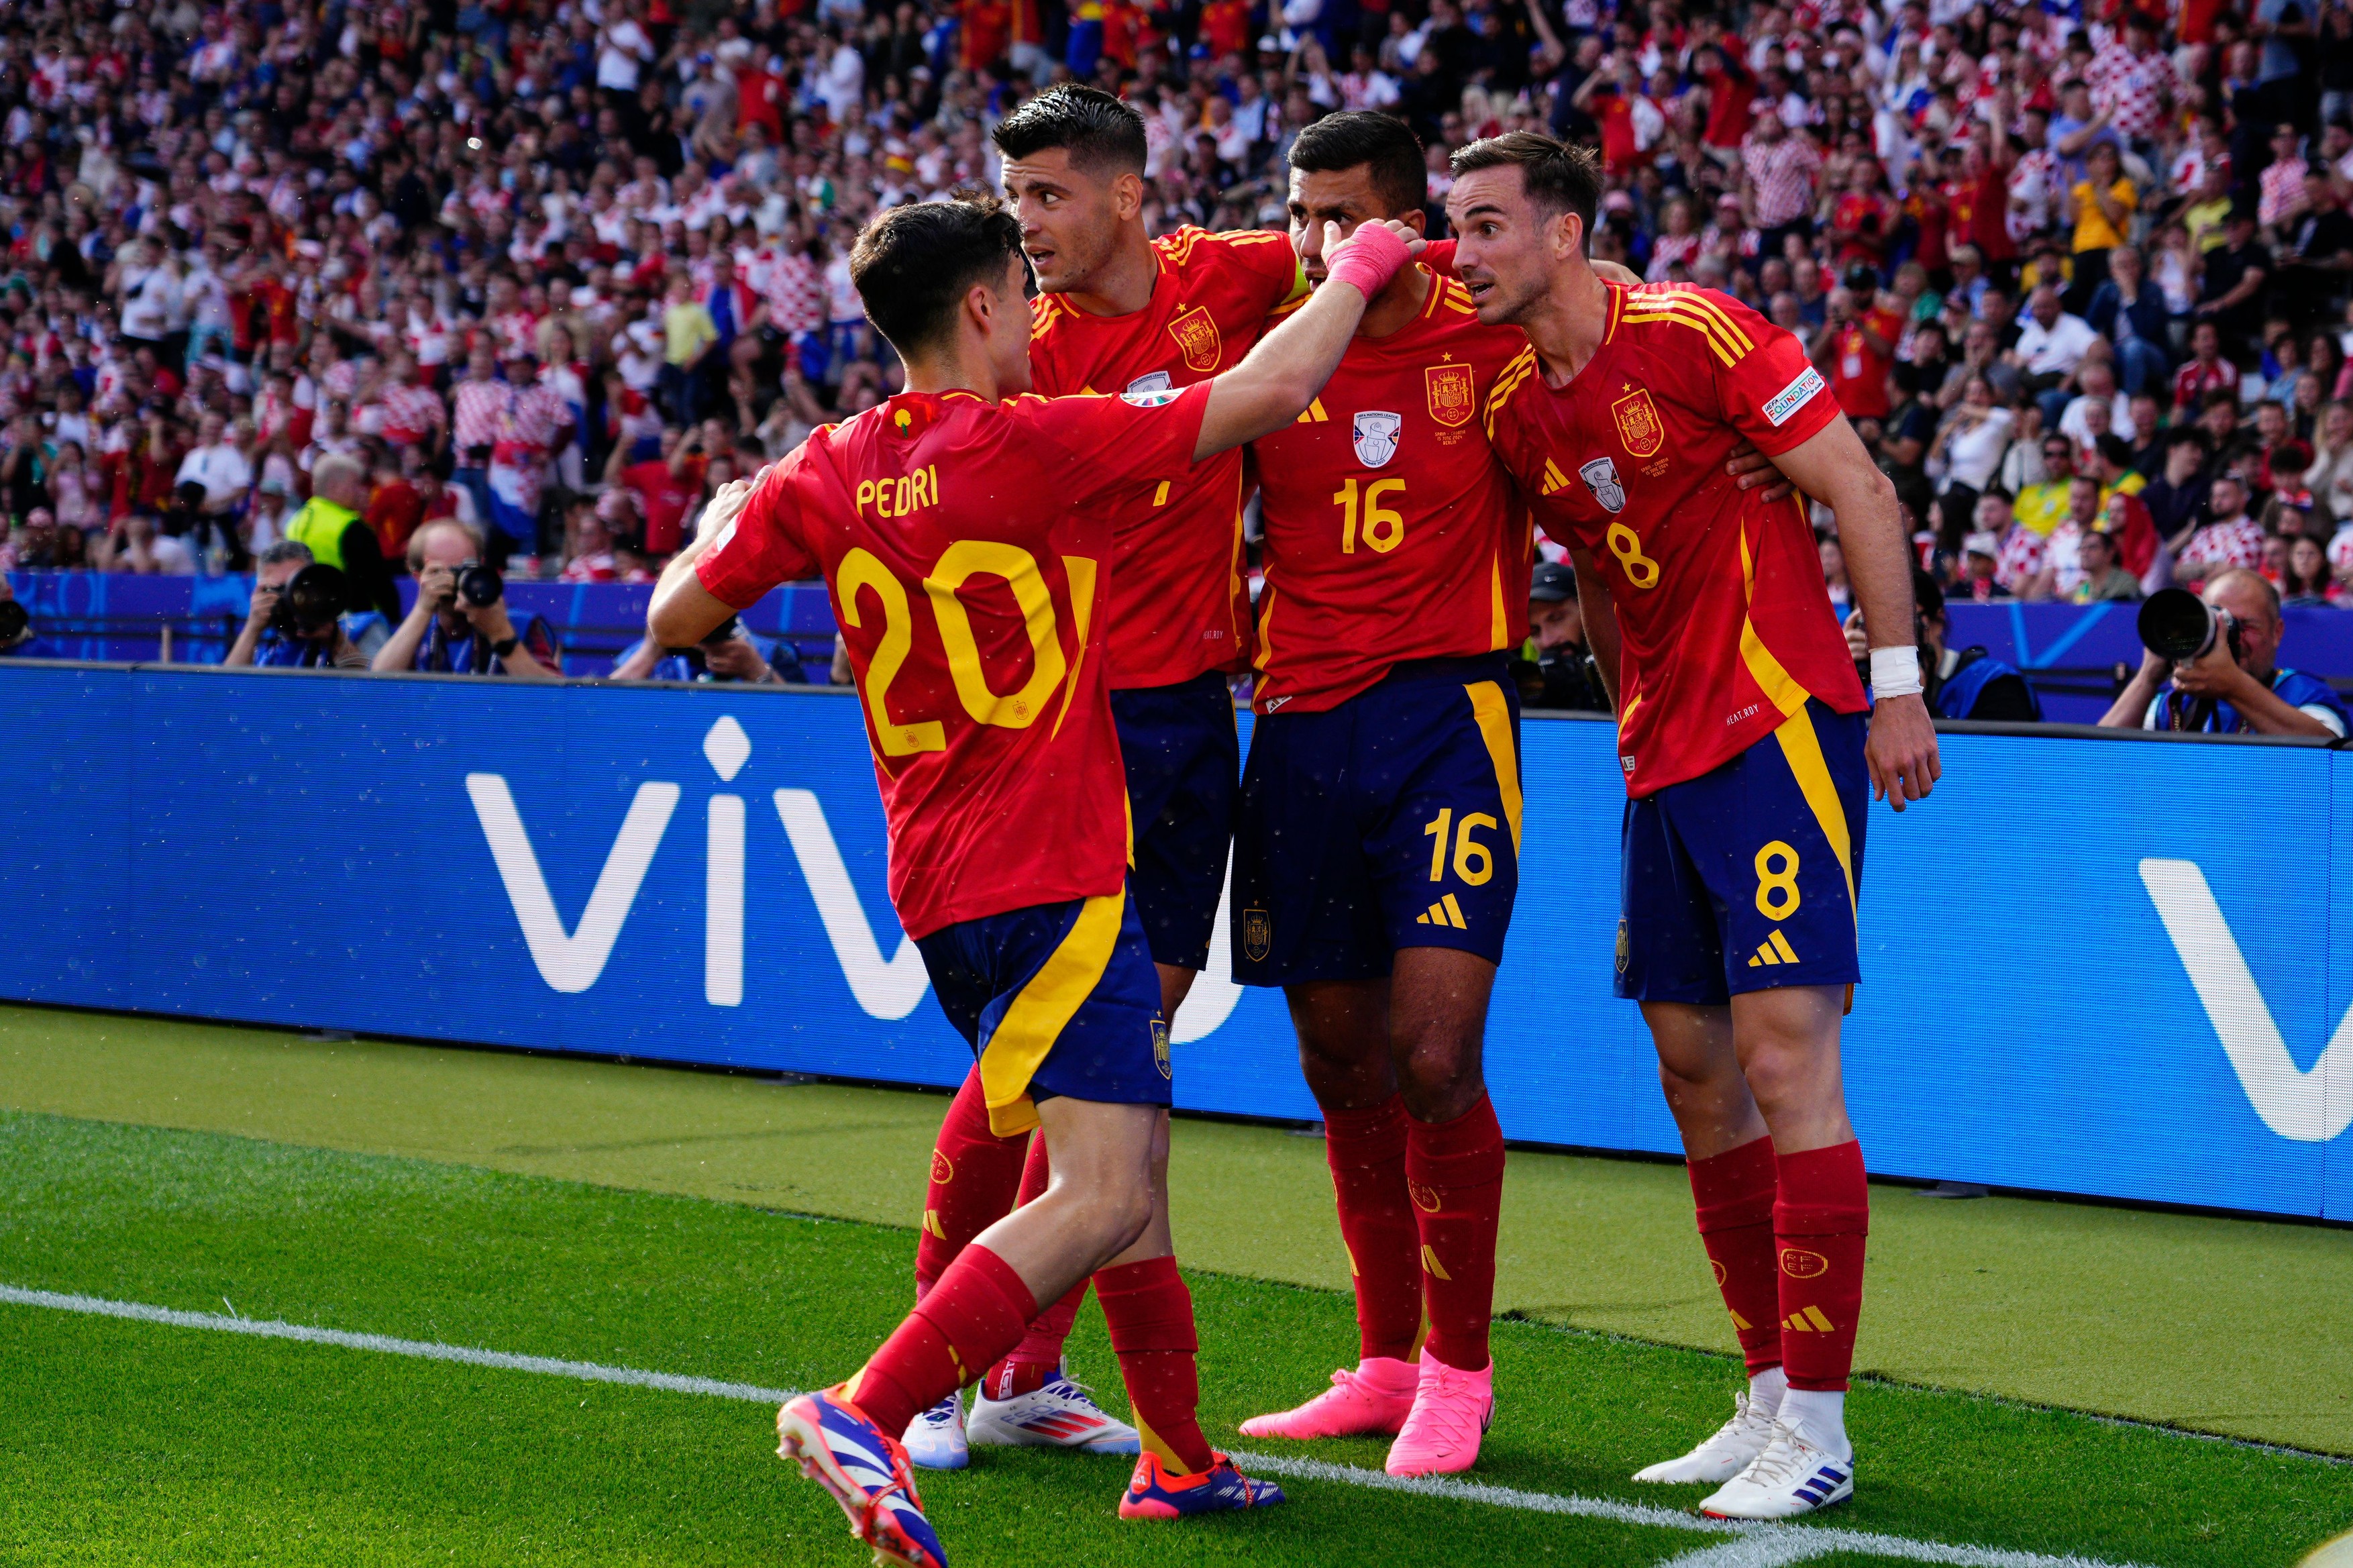 Luis de la Fuente l-a sfătuit pe unul dintre marcatorii din meciul Spania - Croația 3-0 să nu mergă Real Madrid